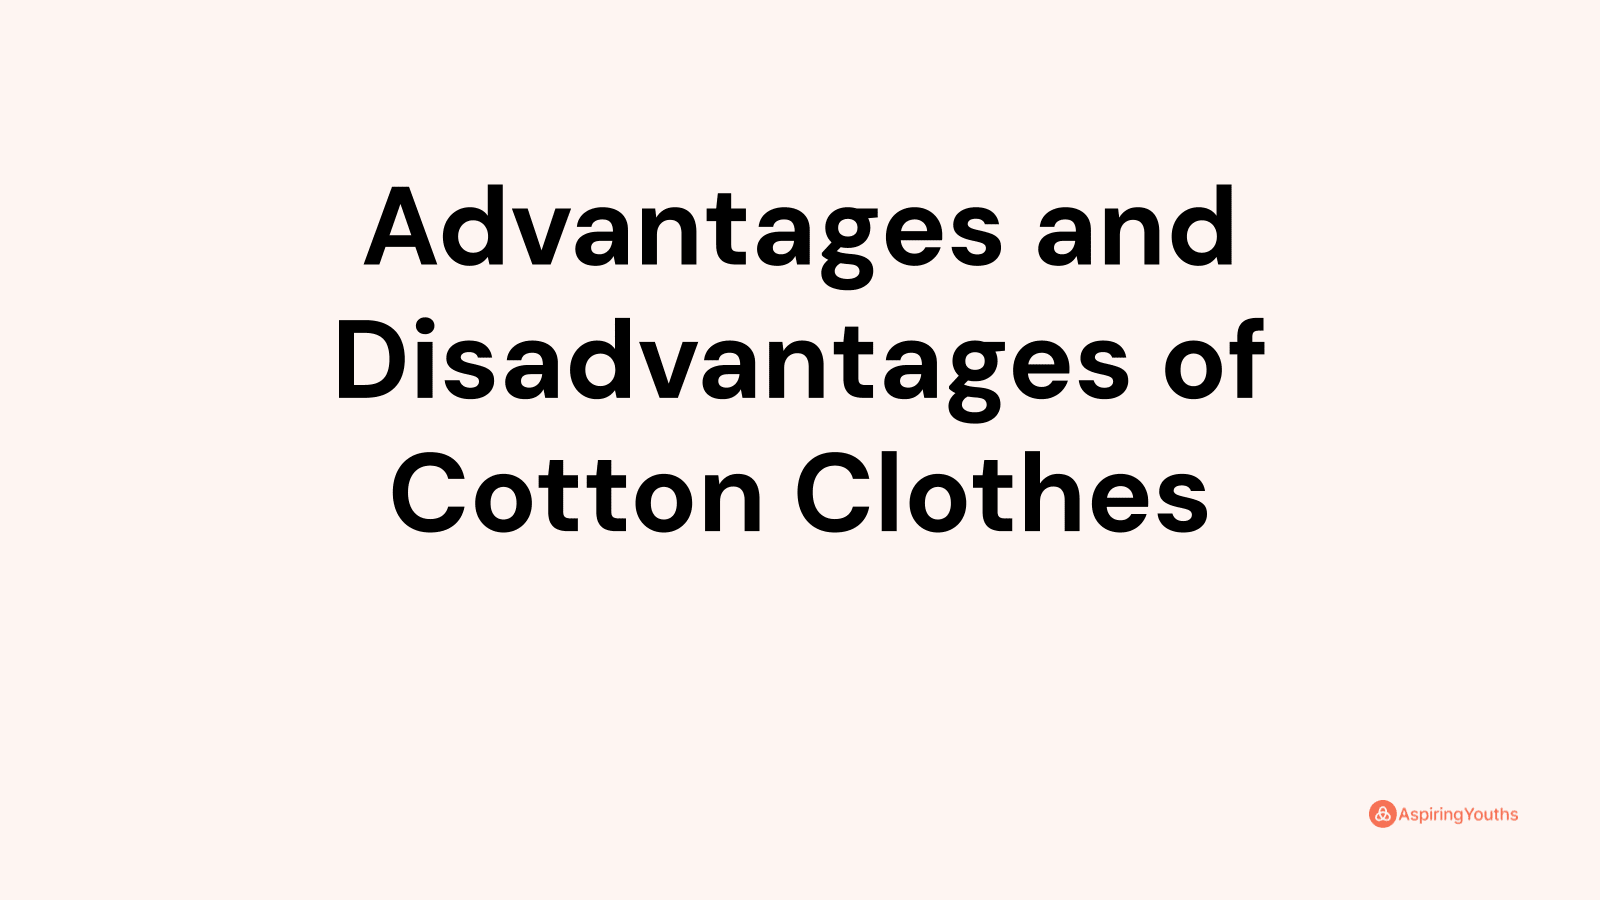 Advantages and disadvantages of Cotton Clothes